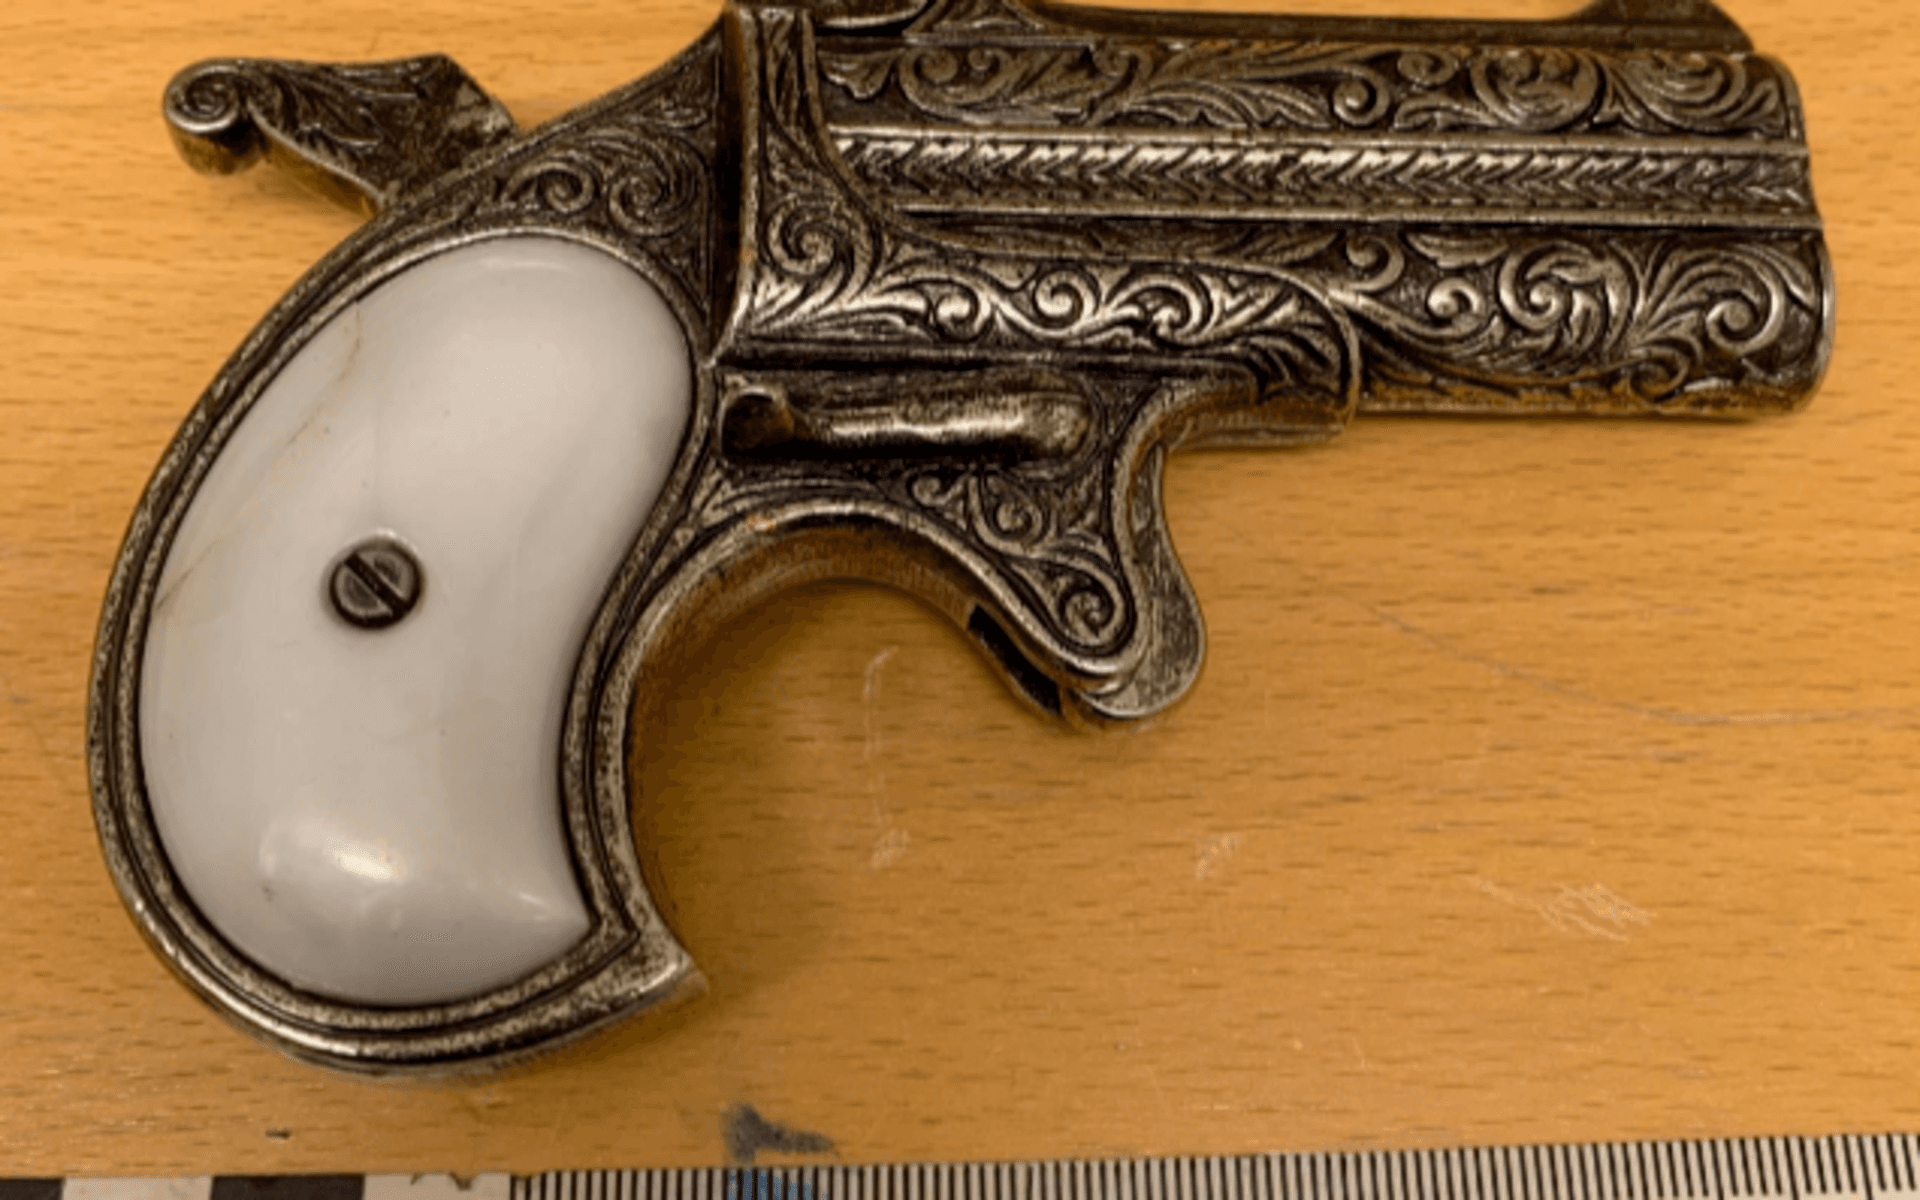 På en byrå i hallen utanför köket fann polisen bland annat denna pistol vid en husrannsakan i Skärhamn.